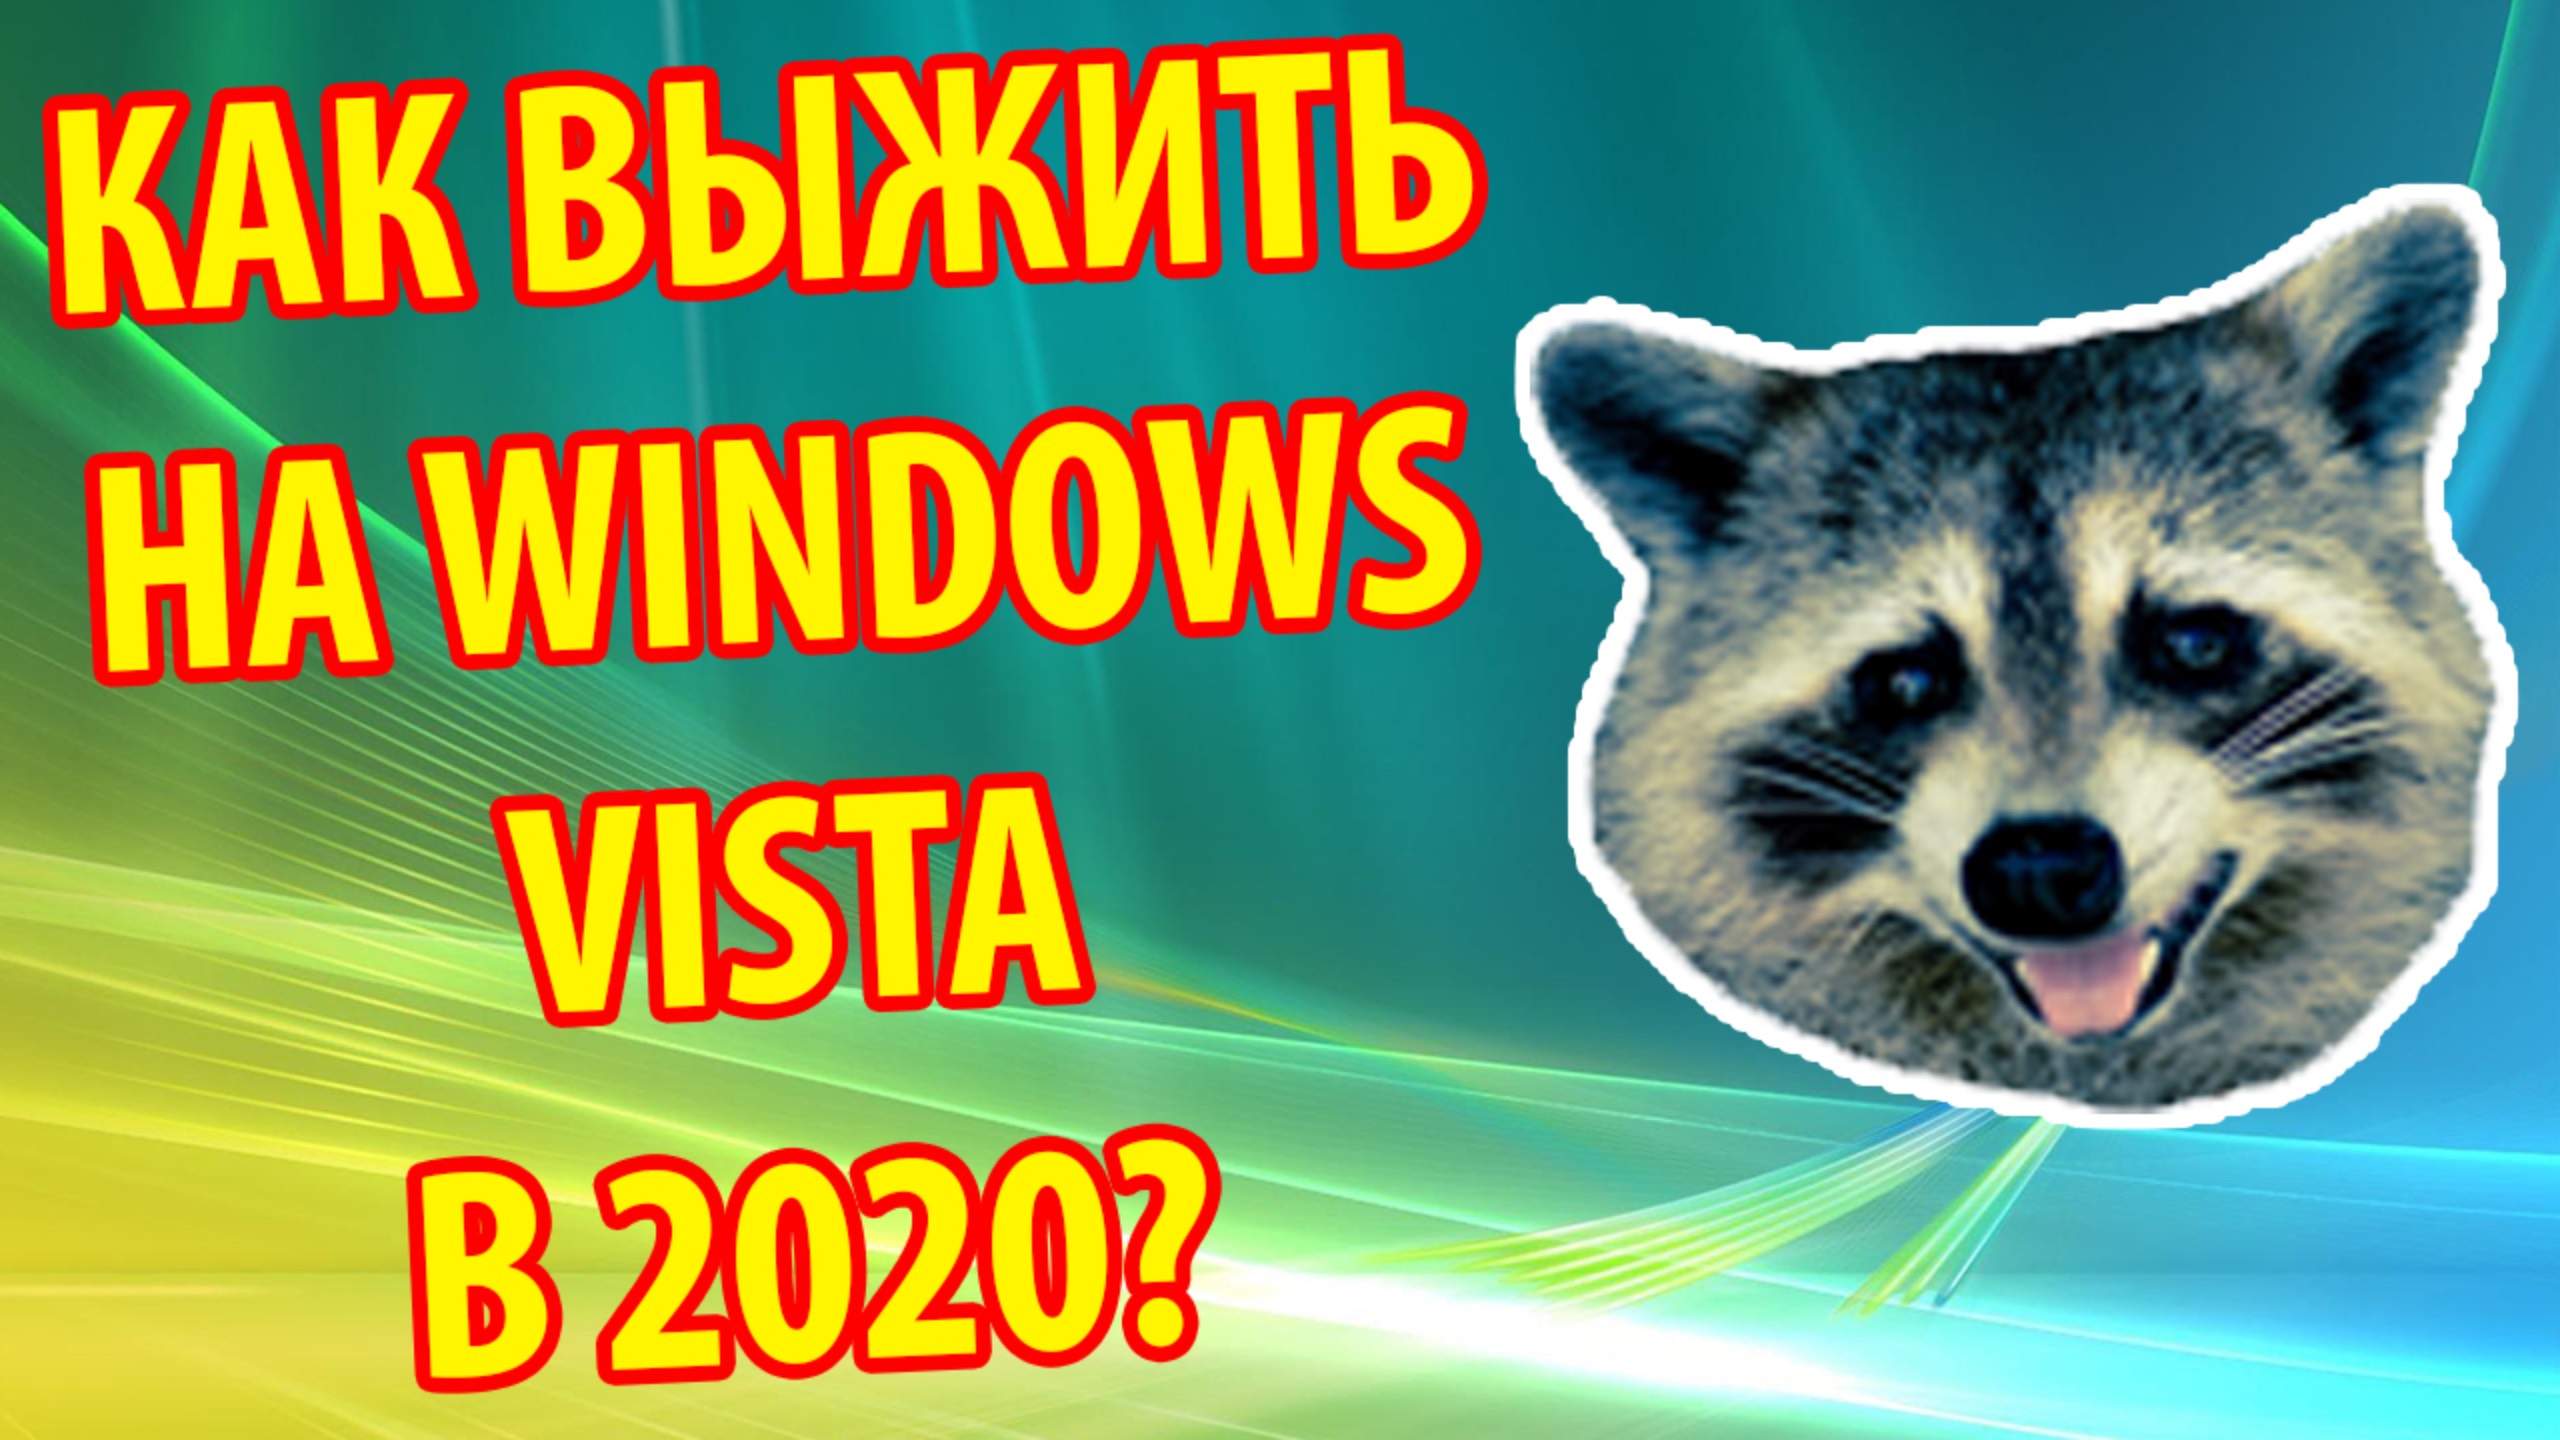 Выживание на Windows Vista в 2020 году. Выбираем лучший браузер!